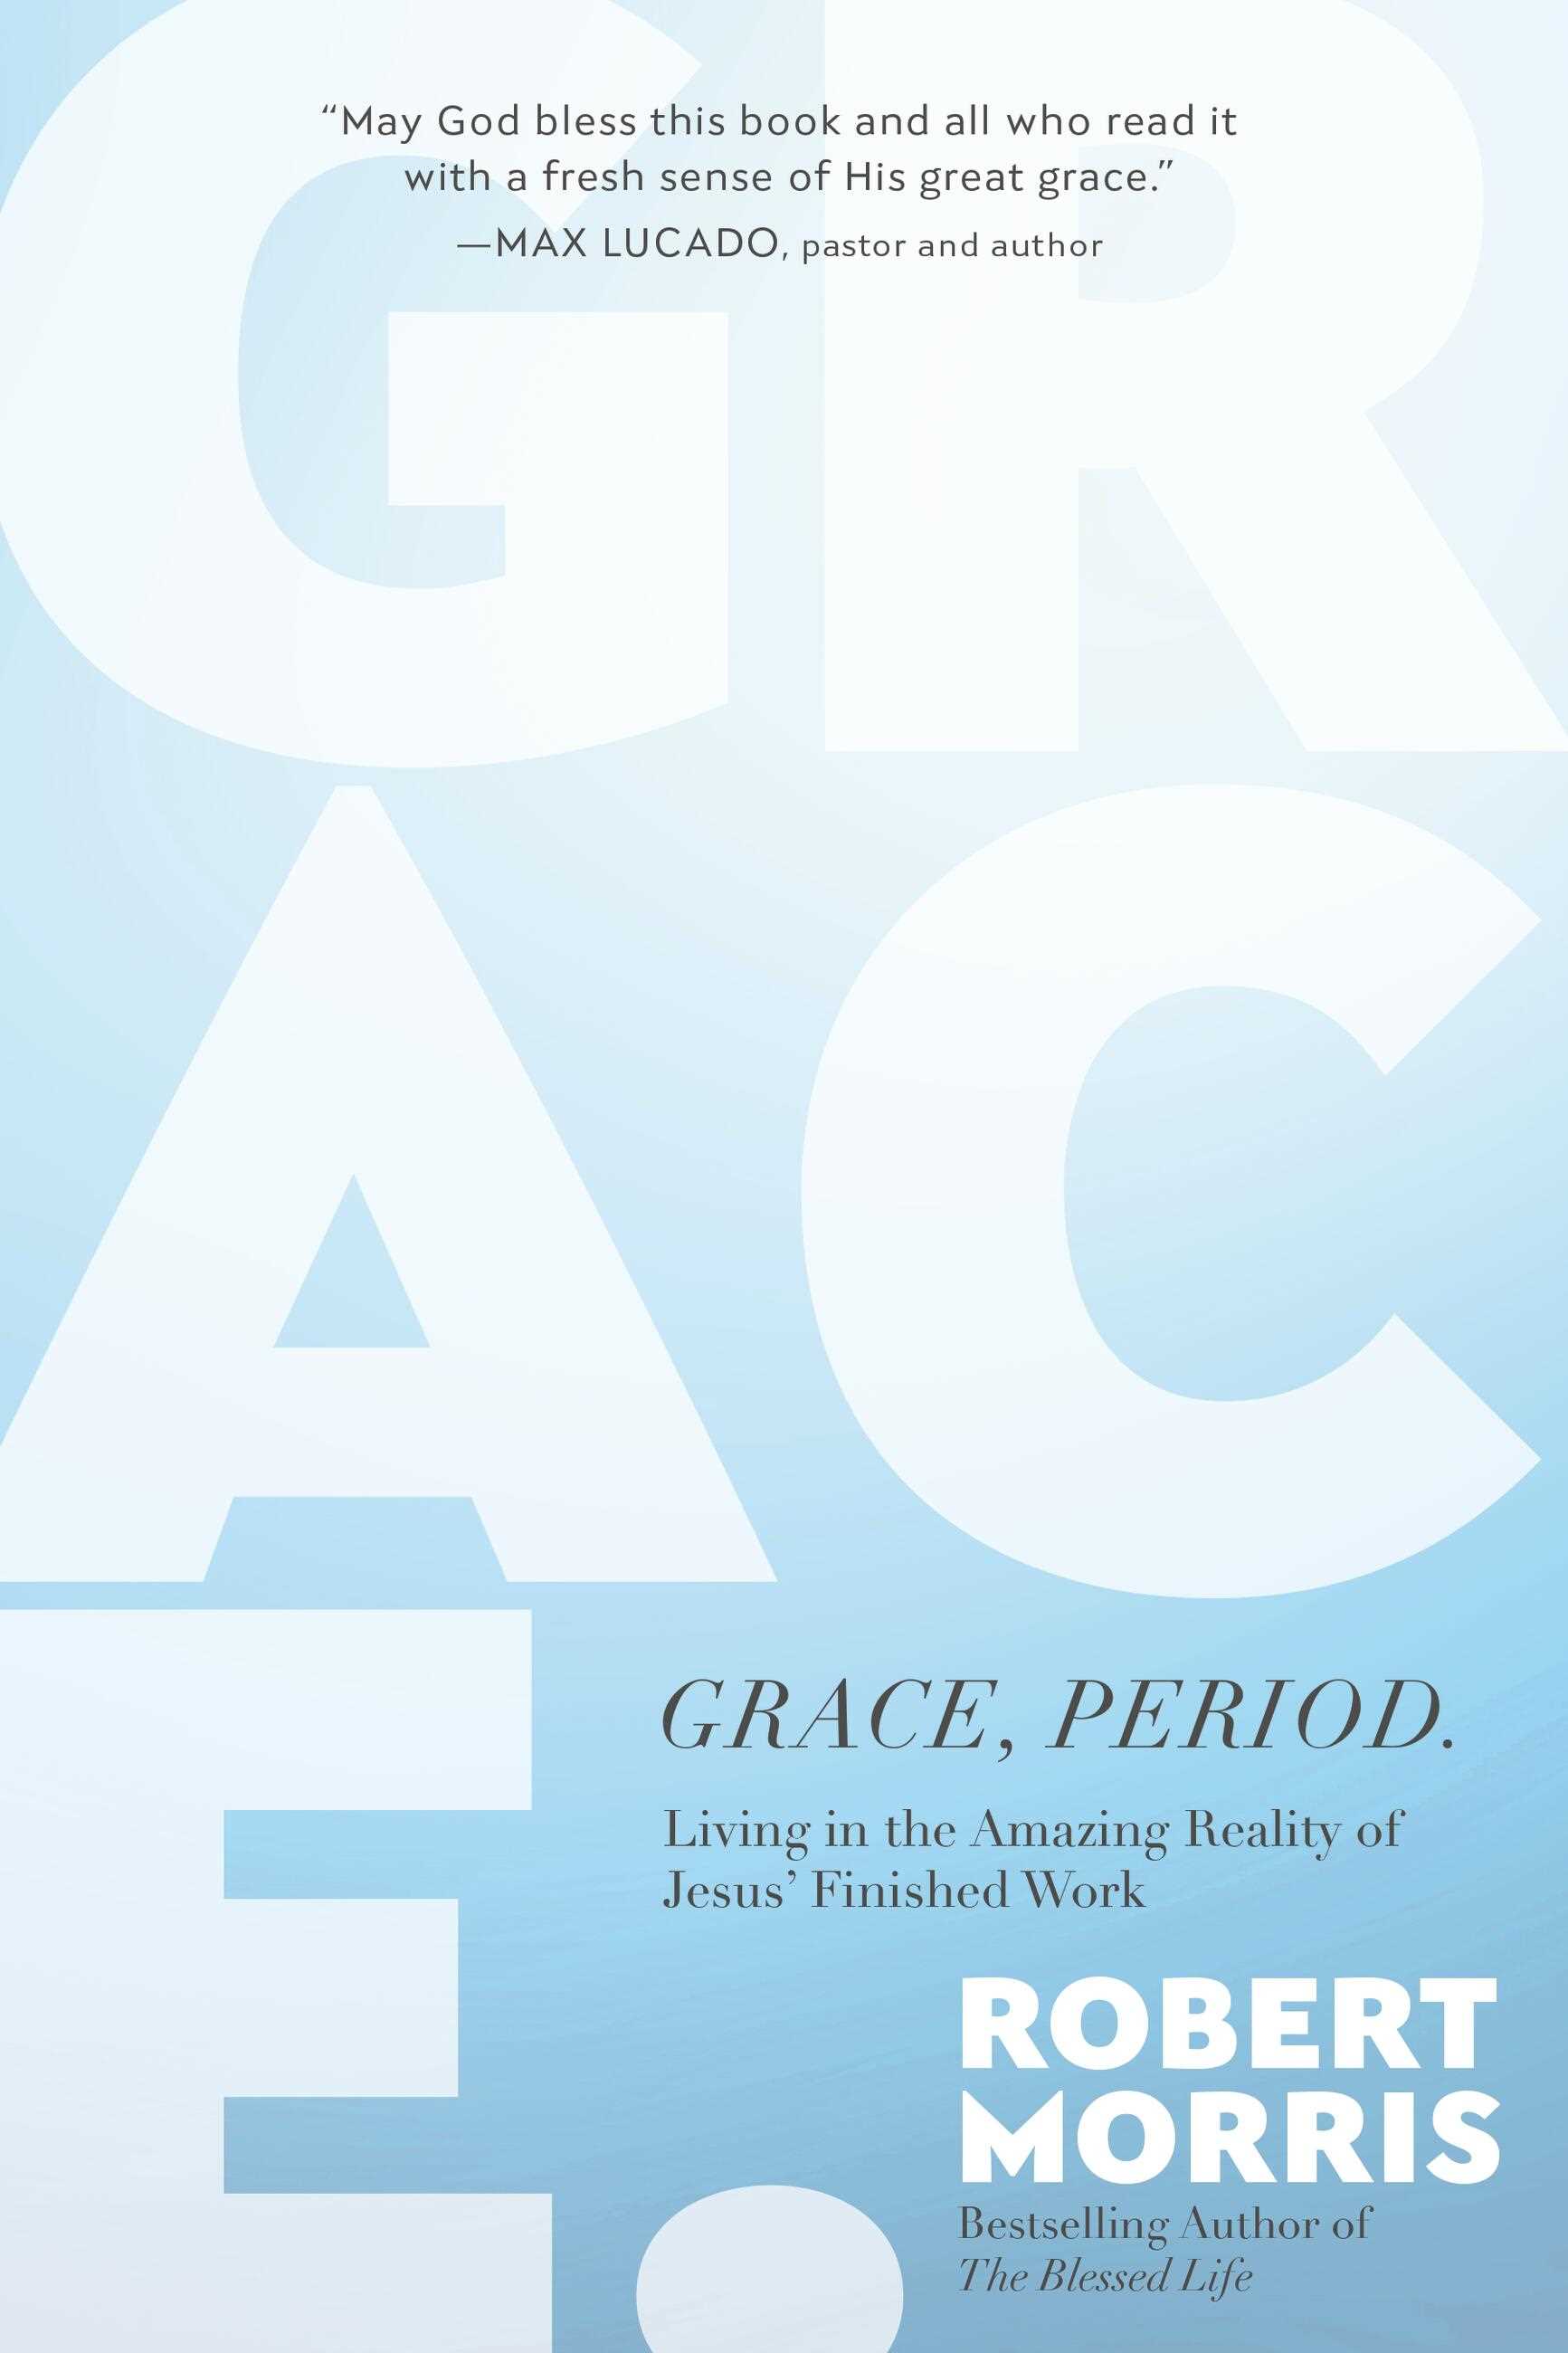 Grace, Period.